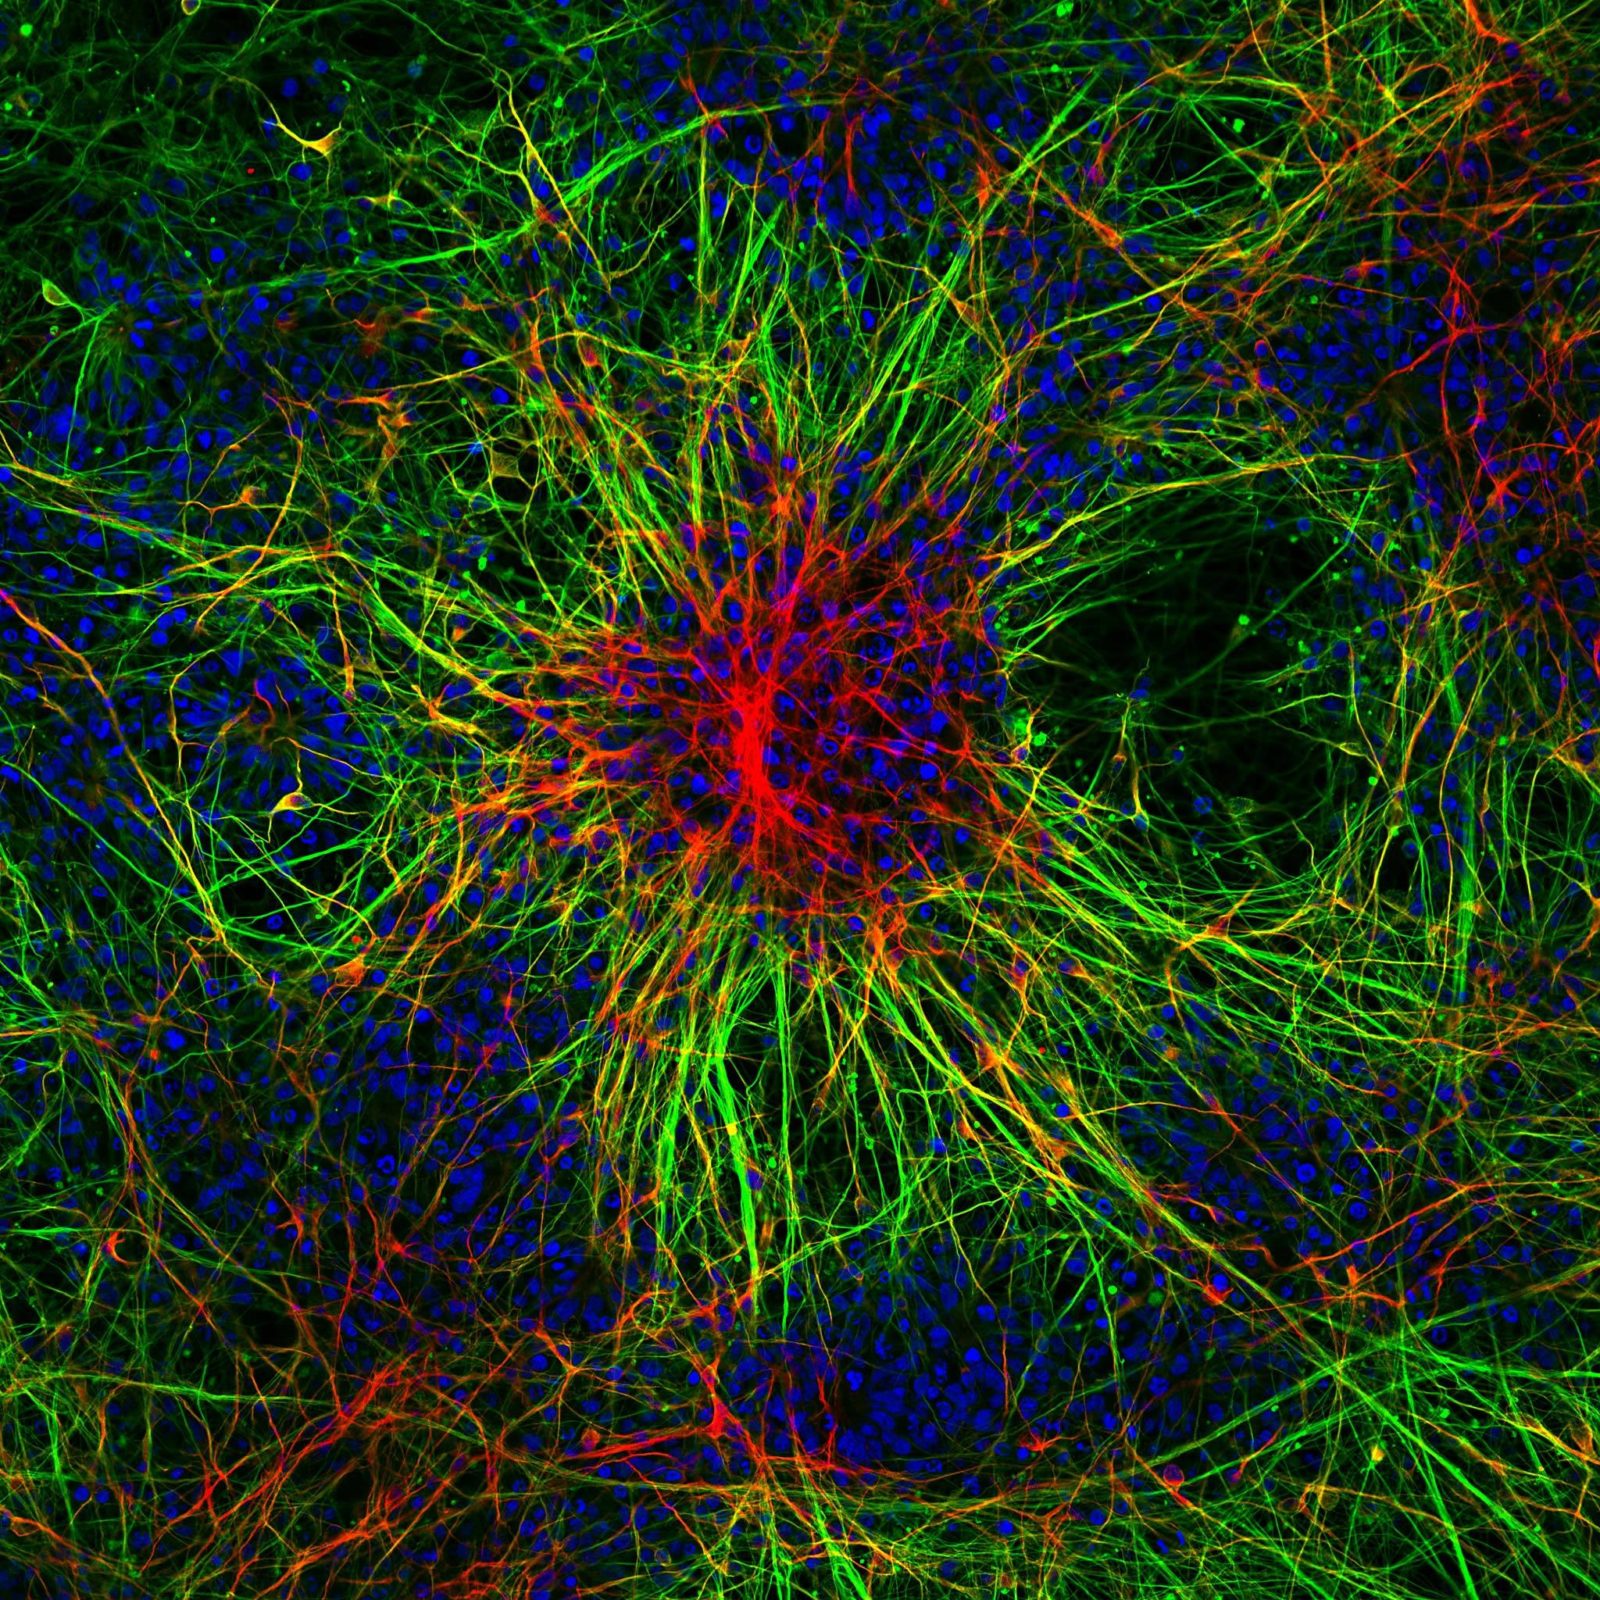 Brain neurons. Нейрон Пуанкаре микрофотография. Нейронная клетка. Клетки головного мозга. Нейронная сеть мозга.